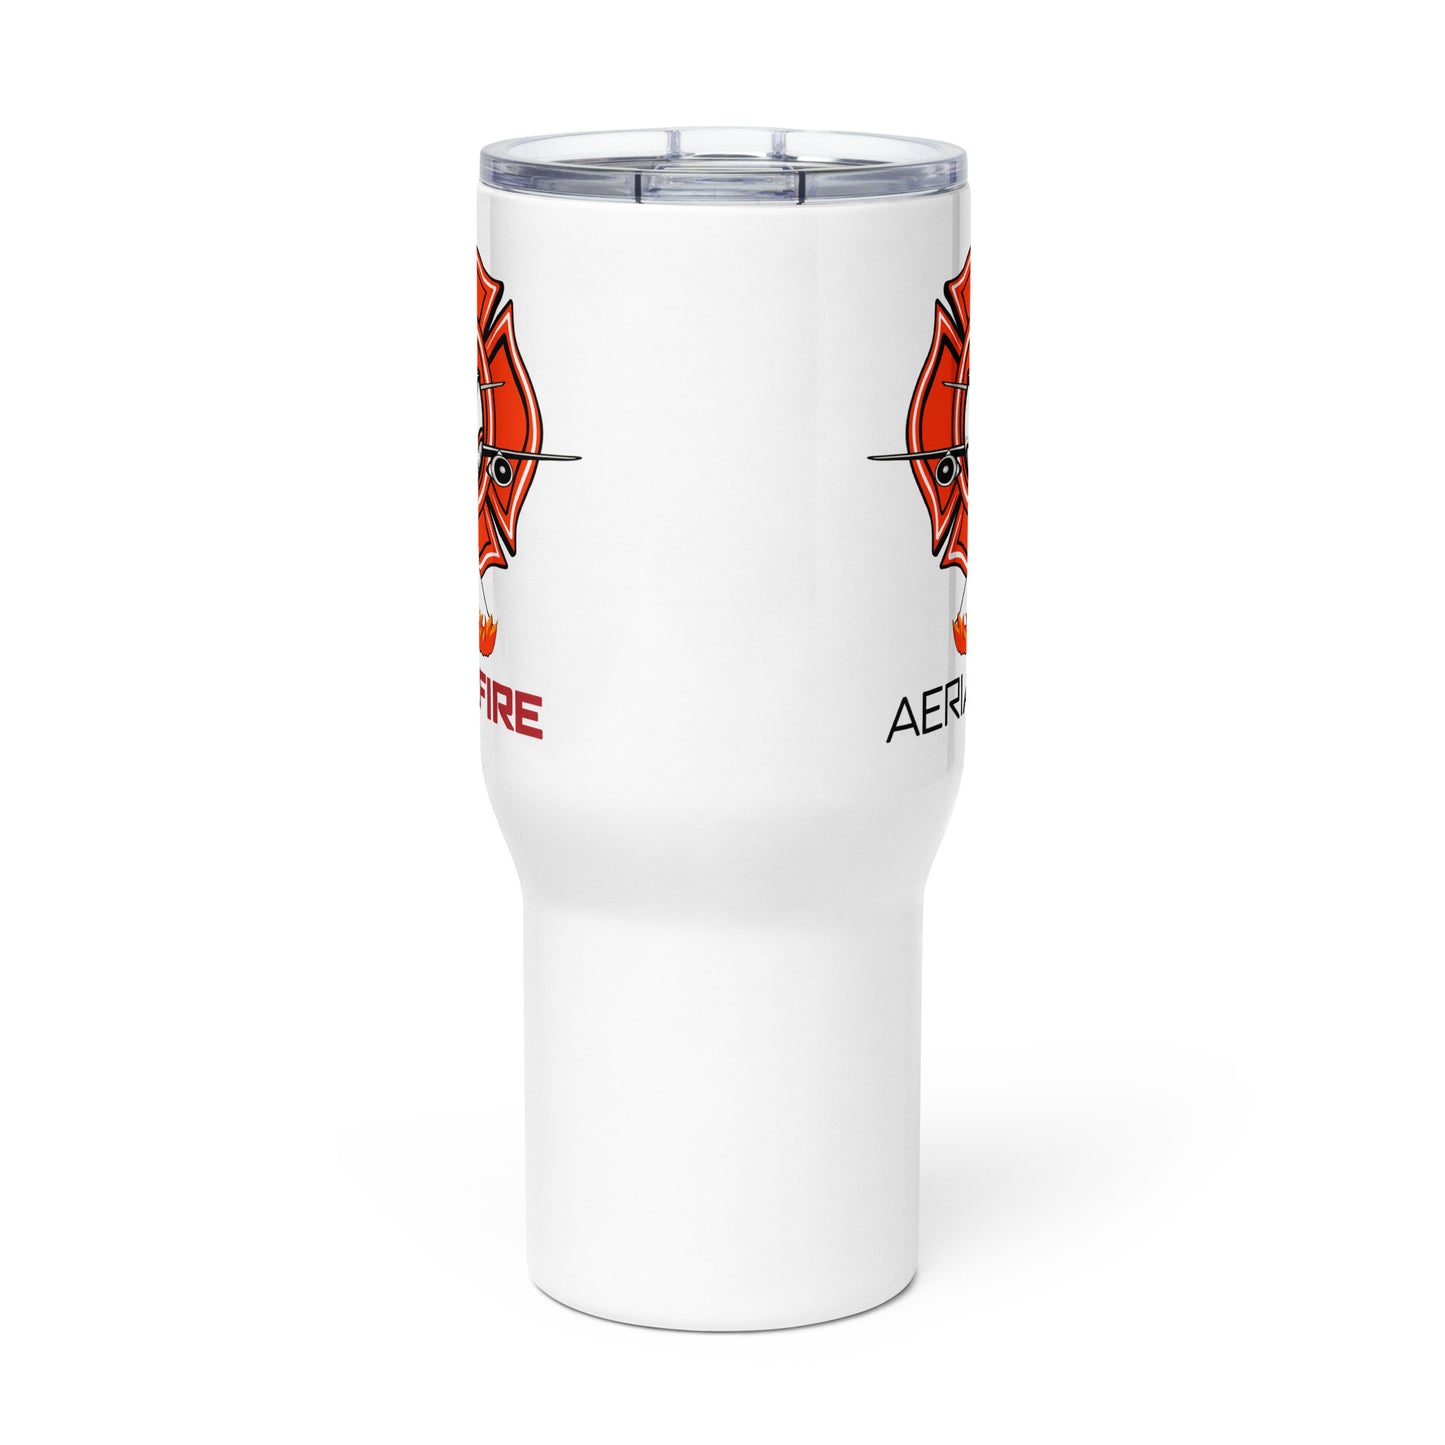 AerialFire DC-10 Cartoon Travel mug with a handle